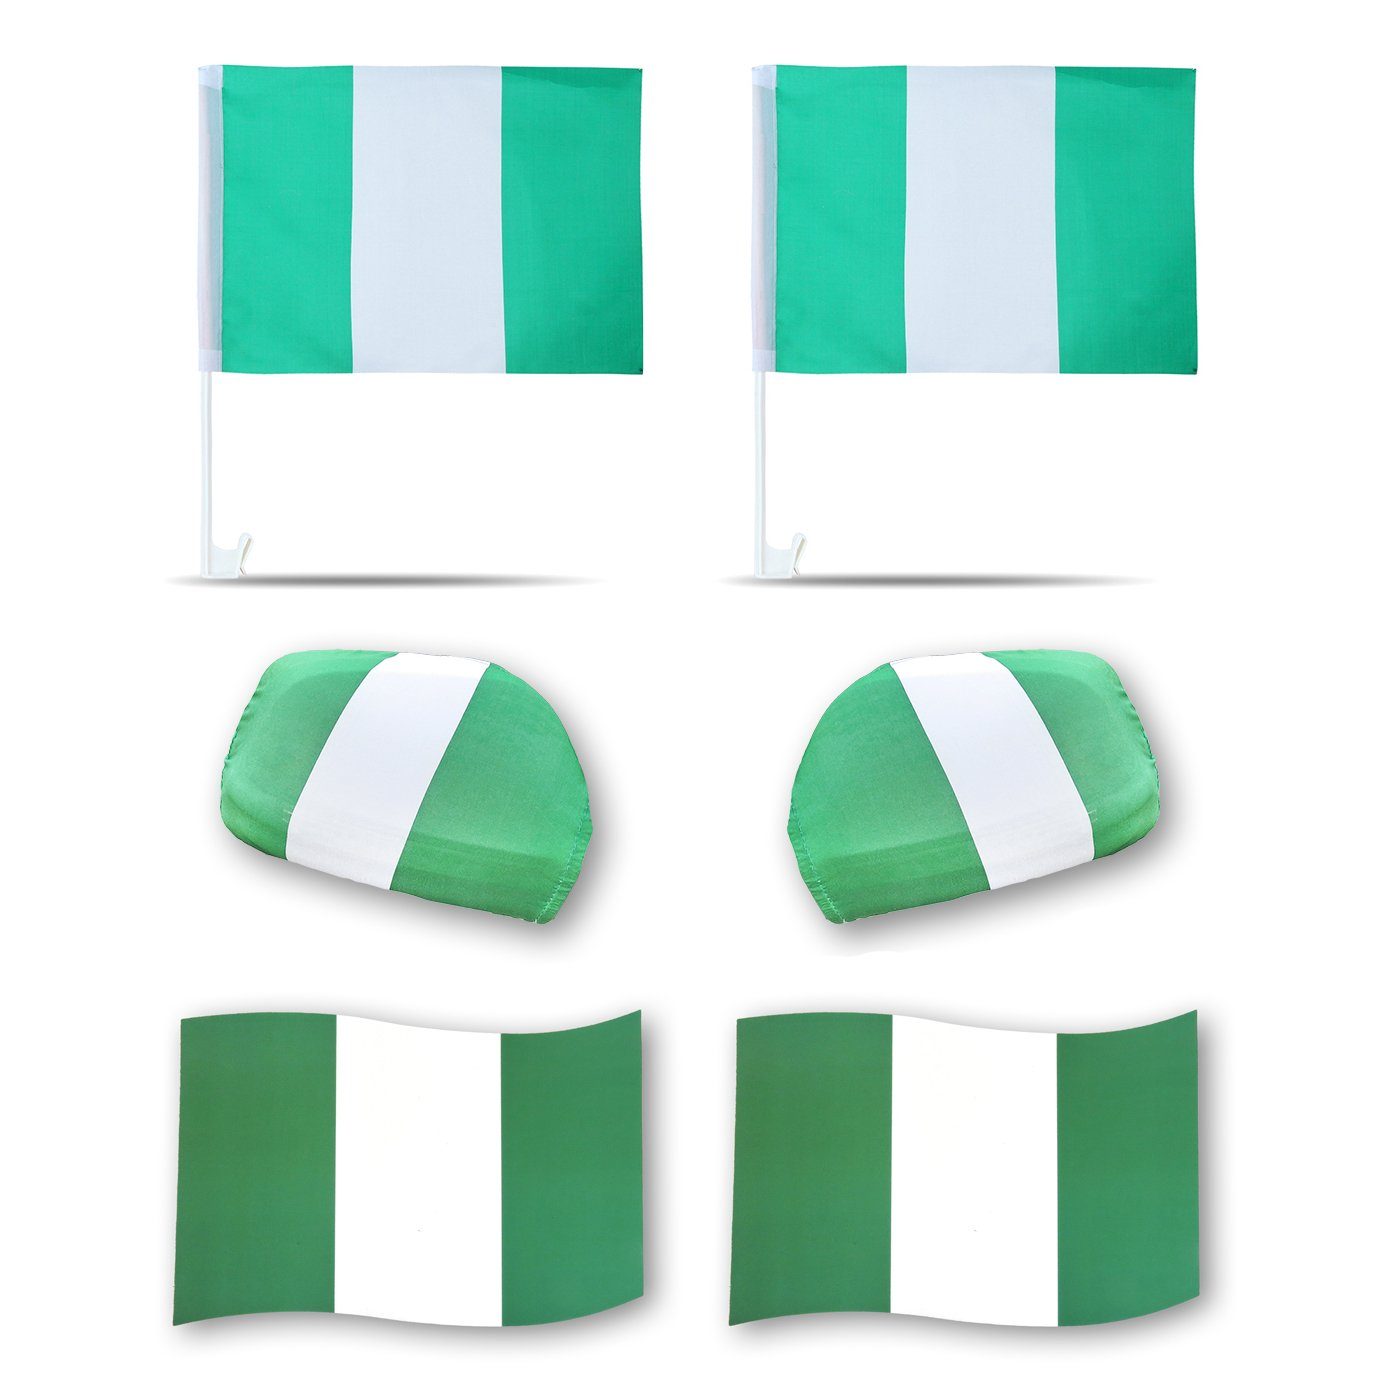 Sonia Fußball Magnete: 3D-Effekt Originelli Magnet Flaggen, "Nigerien" Außenspiegel Fanpaket Fahne Nigeria 3D